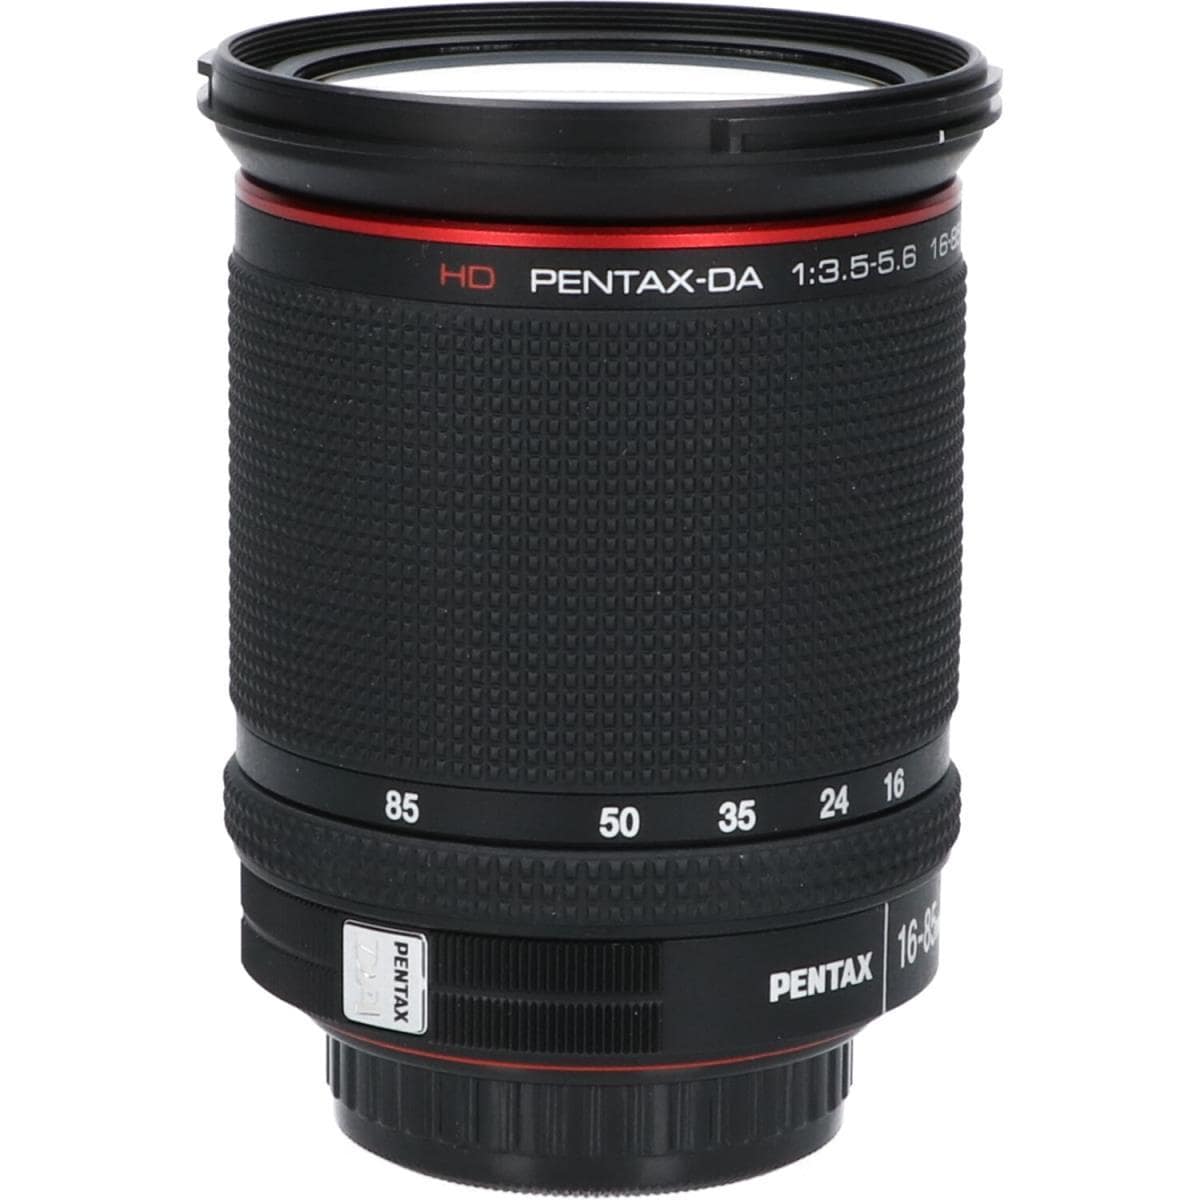 PENTAX HD DA16-85mm F3.5-5.6DC WR